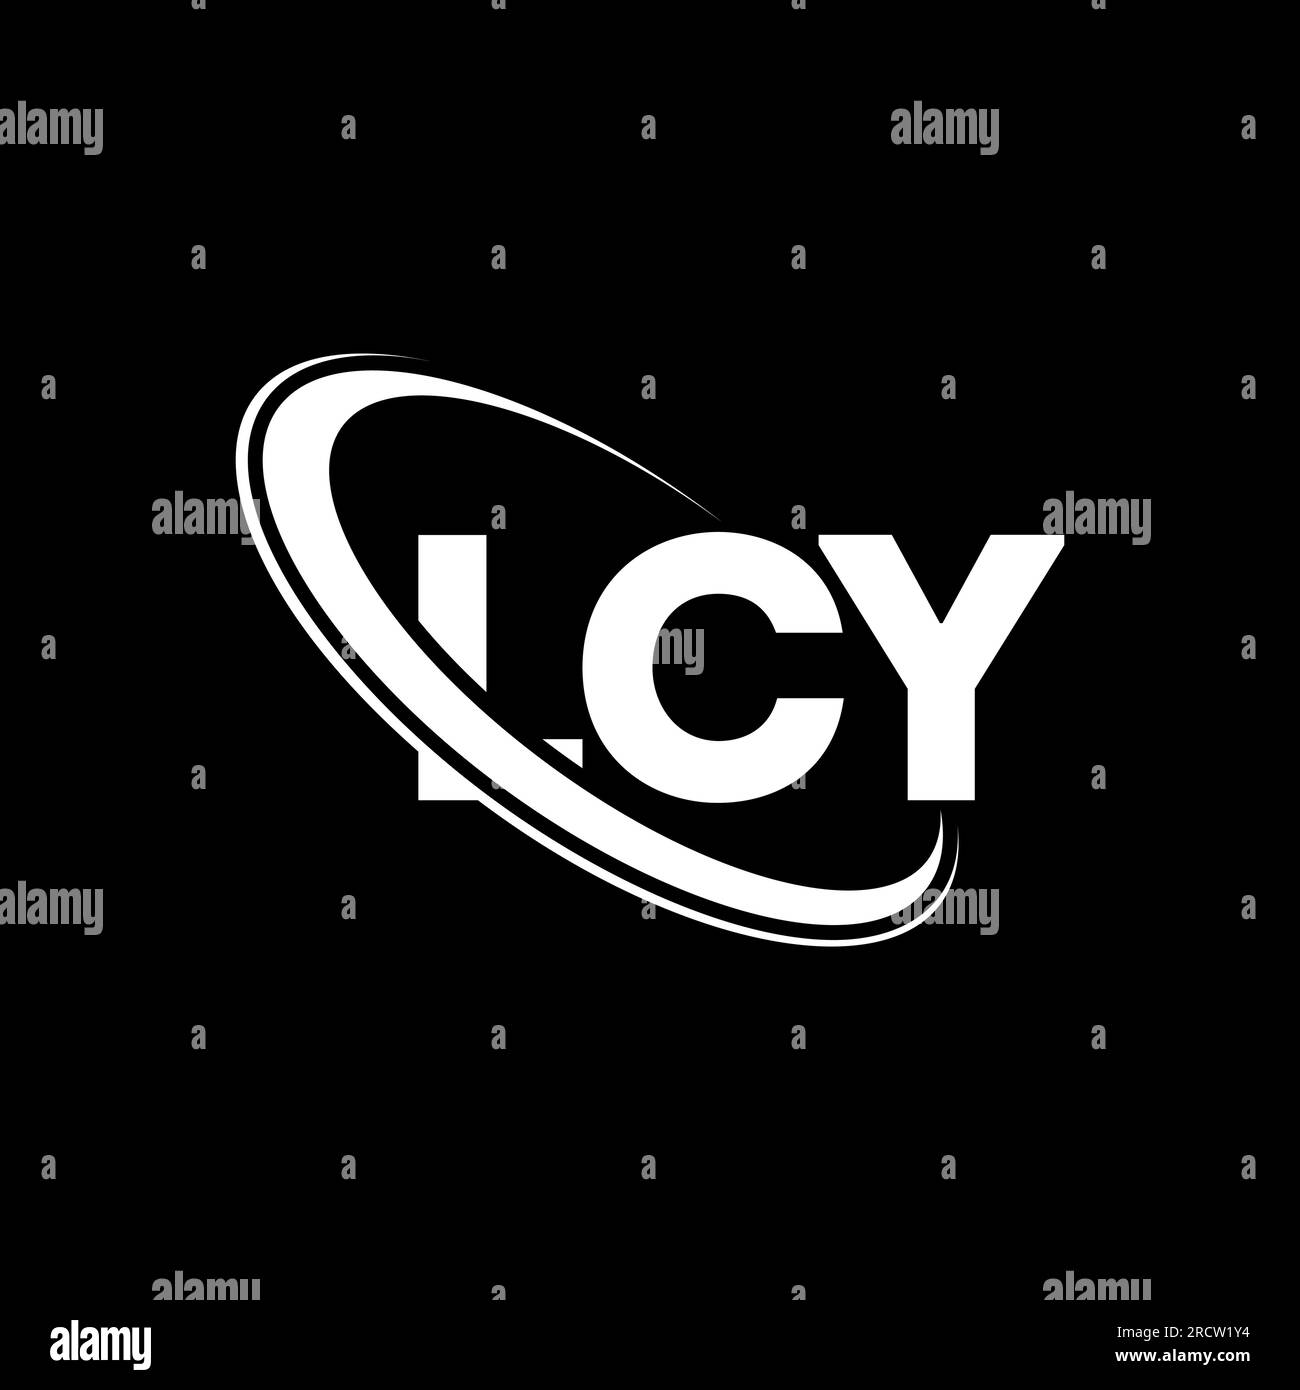 LCY-Logo. LCY-Buchstabe. LCY-Logo mit Buchstaben. Initialen LCY-Logo, verbunden mit einem Kreis und einem Monogramm-Logo in Großbuchstaben. LCY-Typografie für Technologie, Geschäfte Stock Vektor